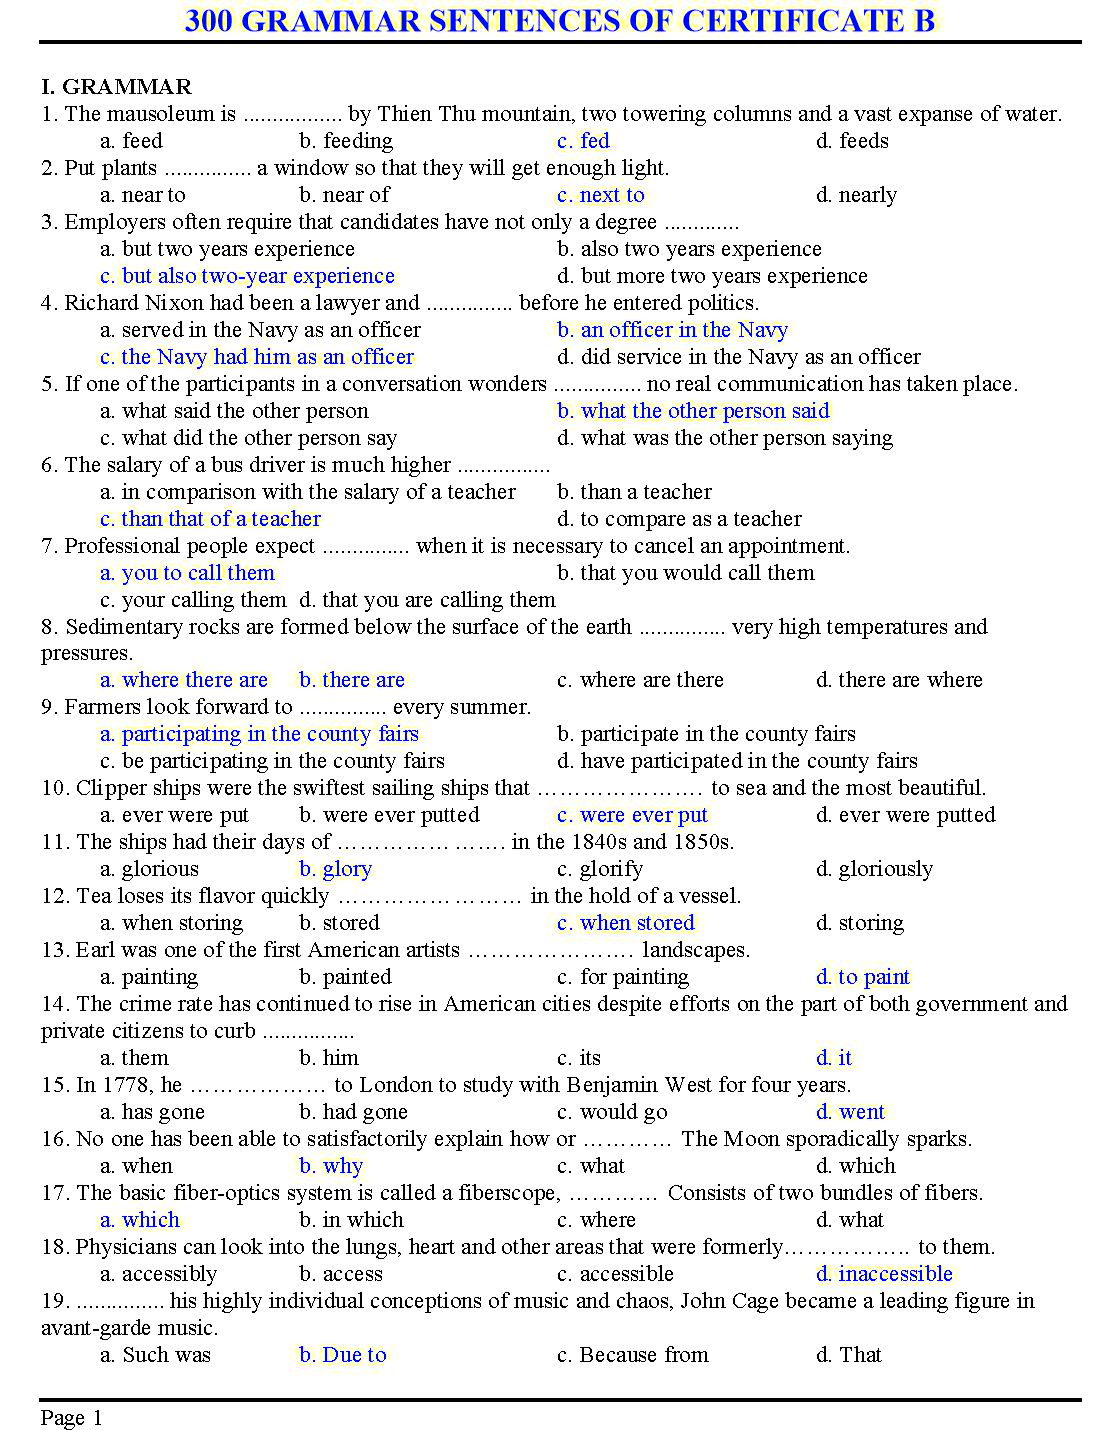 300 grammar sentences of certificate B trang 1